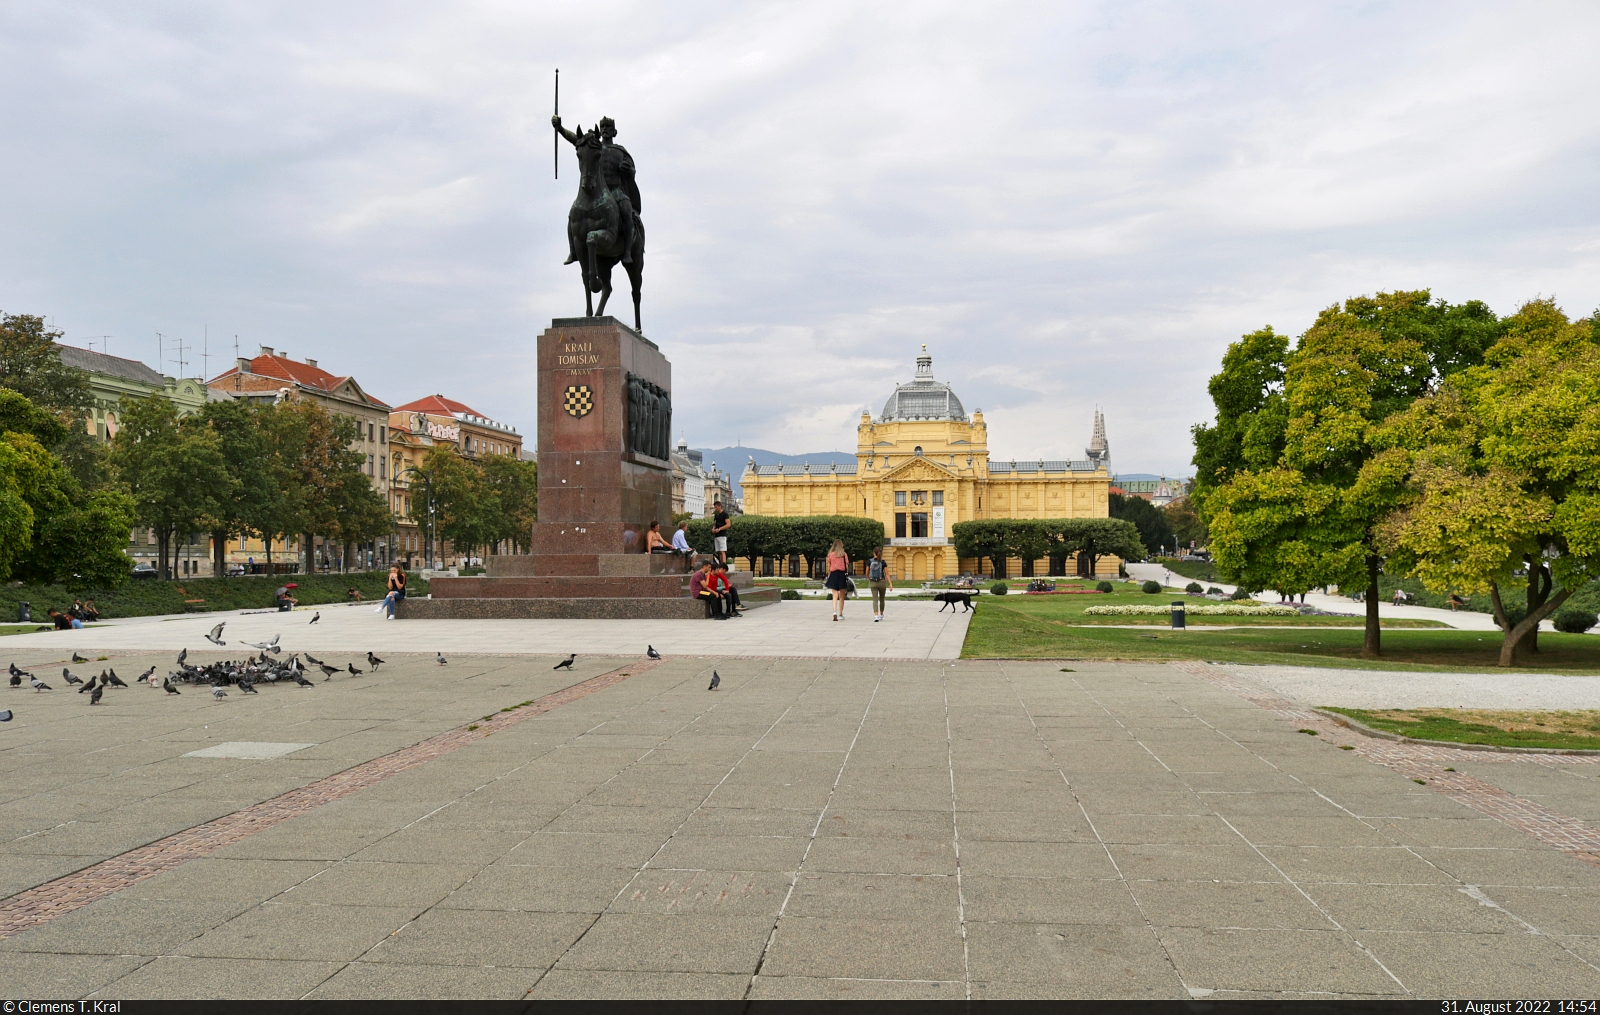 Zagreb (HR):
Die Statue von Knig Tomislav (Kralj Tomislav) und der Kunstpavillon stehen direkt gegenber vom Hauptbahnhof.

🕓 31.8.2022 | 14:54 Uhr